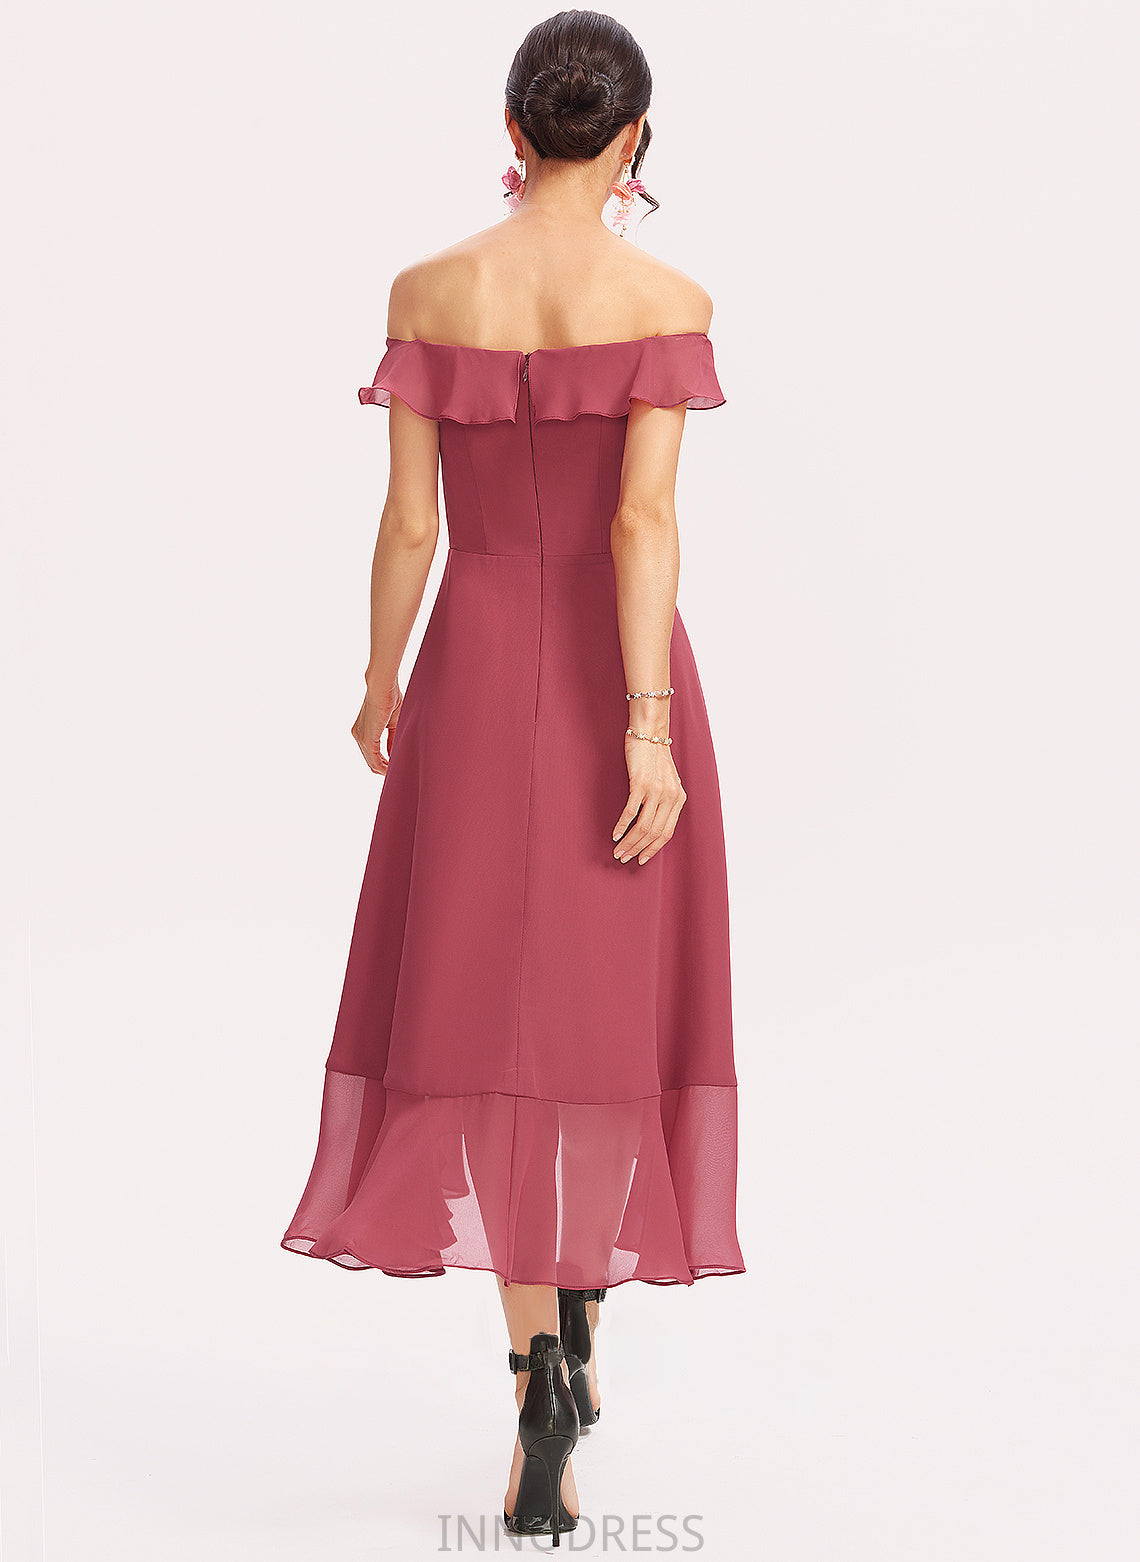 Fabric Embellishment CascadingRuffles Tea-Length Silhouette Length Neckline Off-the-Shoulder A-Line Alyson Floor Length A-Line/Princess